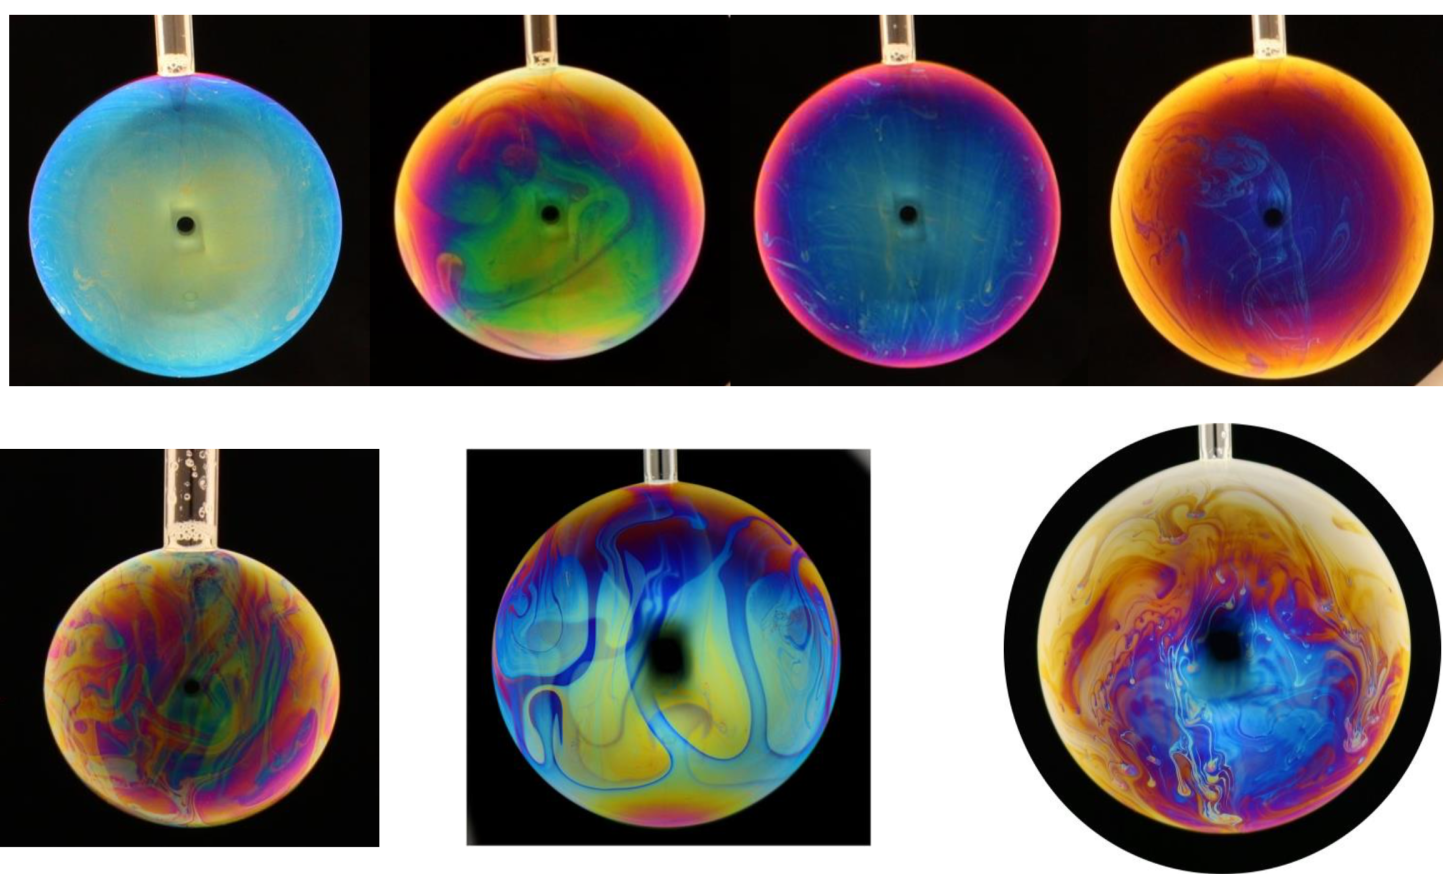 Photographies de bulles de savon à température ambiante réalisées dans le tunnel lumineux